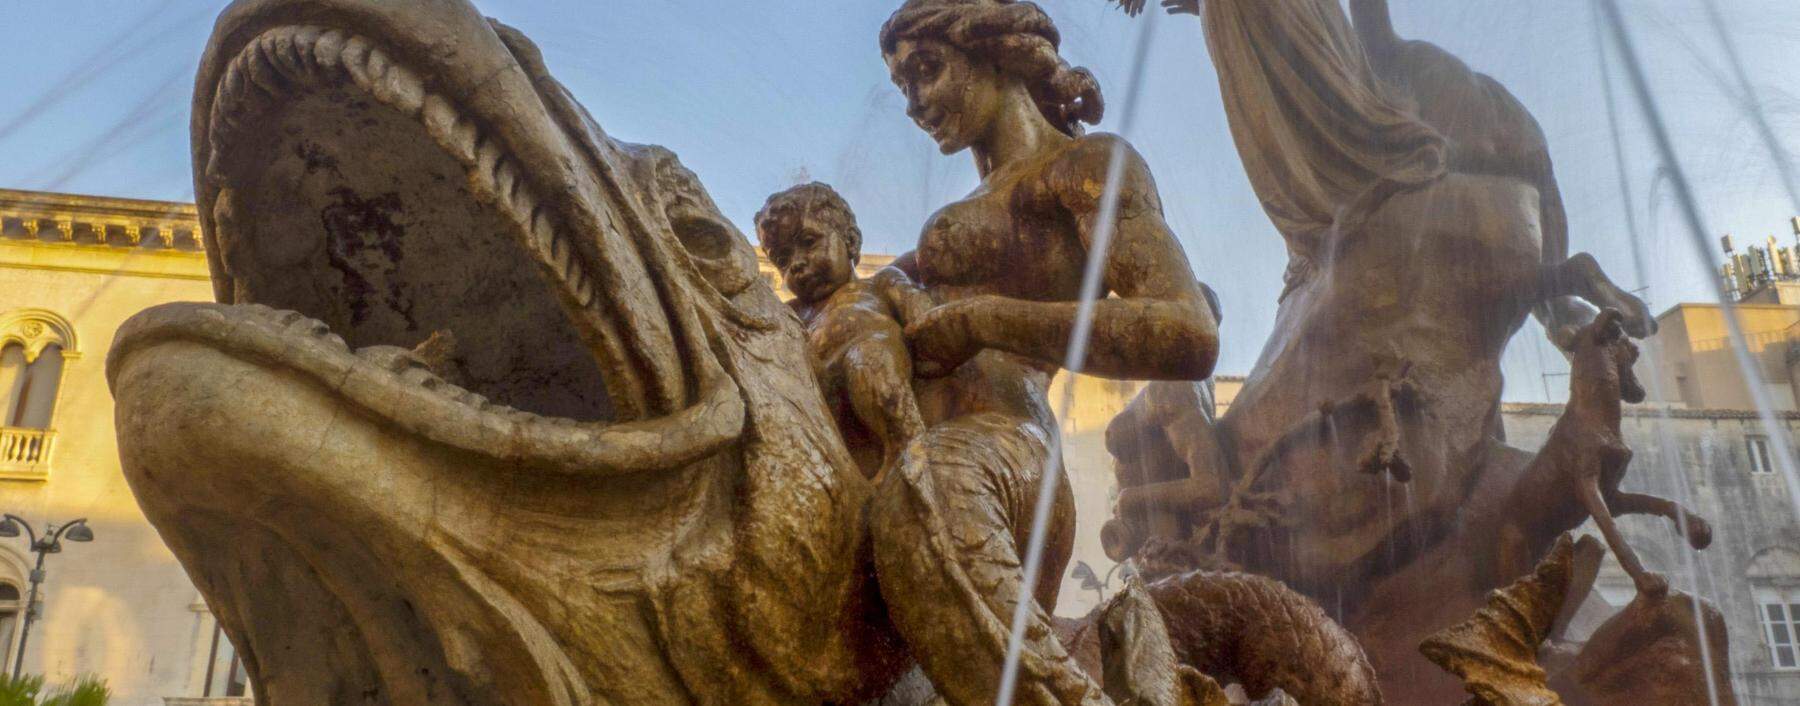 Vor 2500 Jahren war die sizilianische Stadt Syrakus auf Augenhöhe mit Athen. Im Bild: Springbrunnen mit Arethusa im Stadtzentrum.